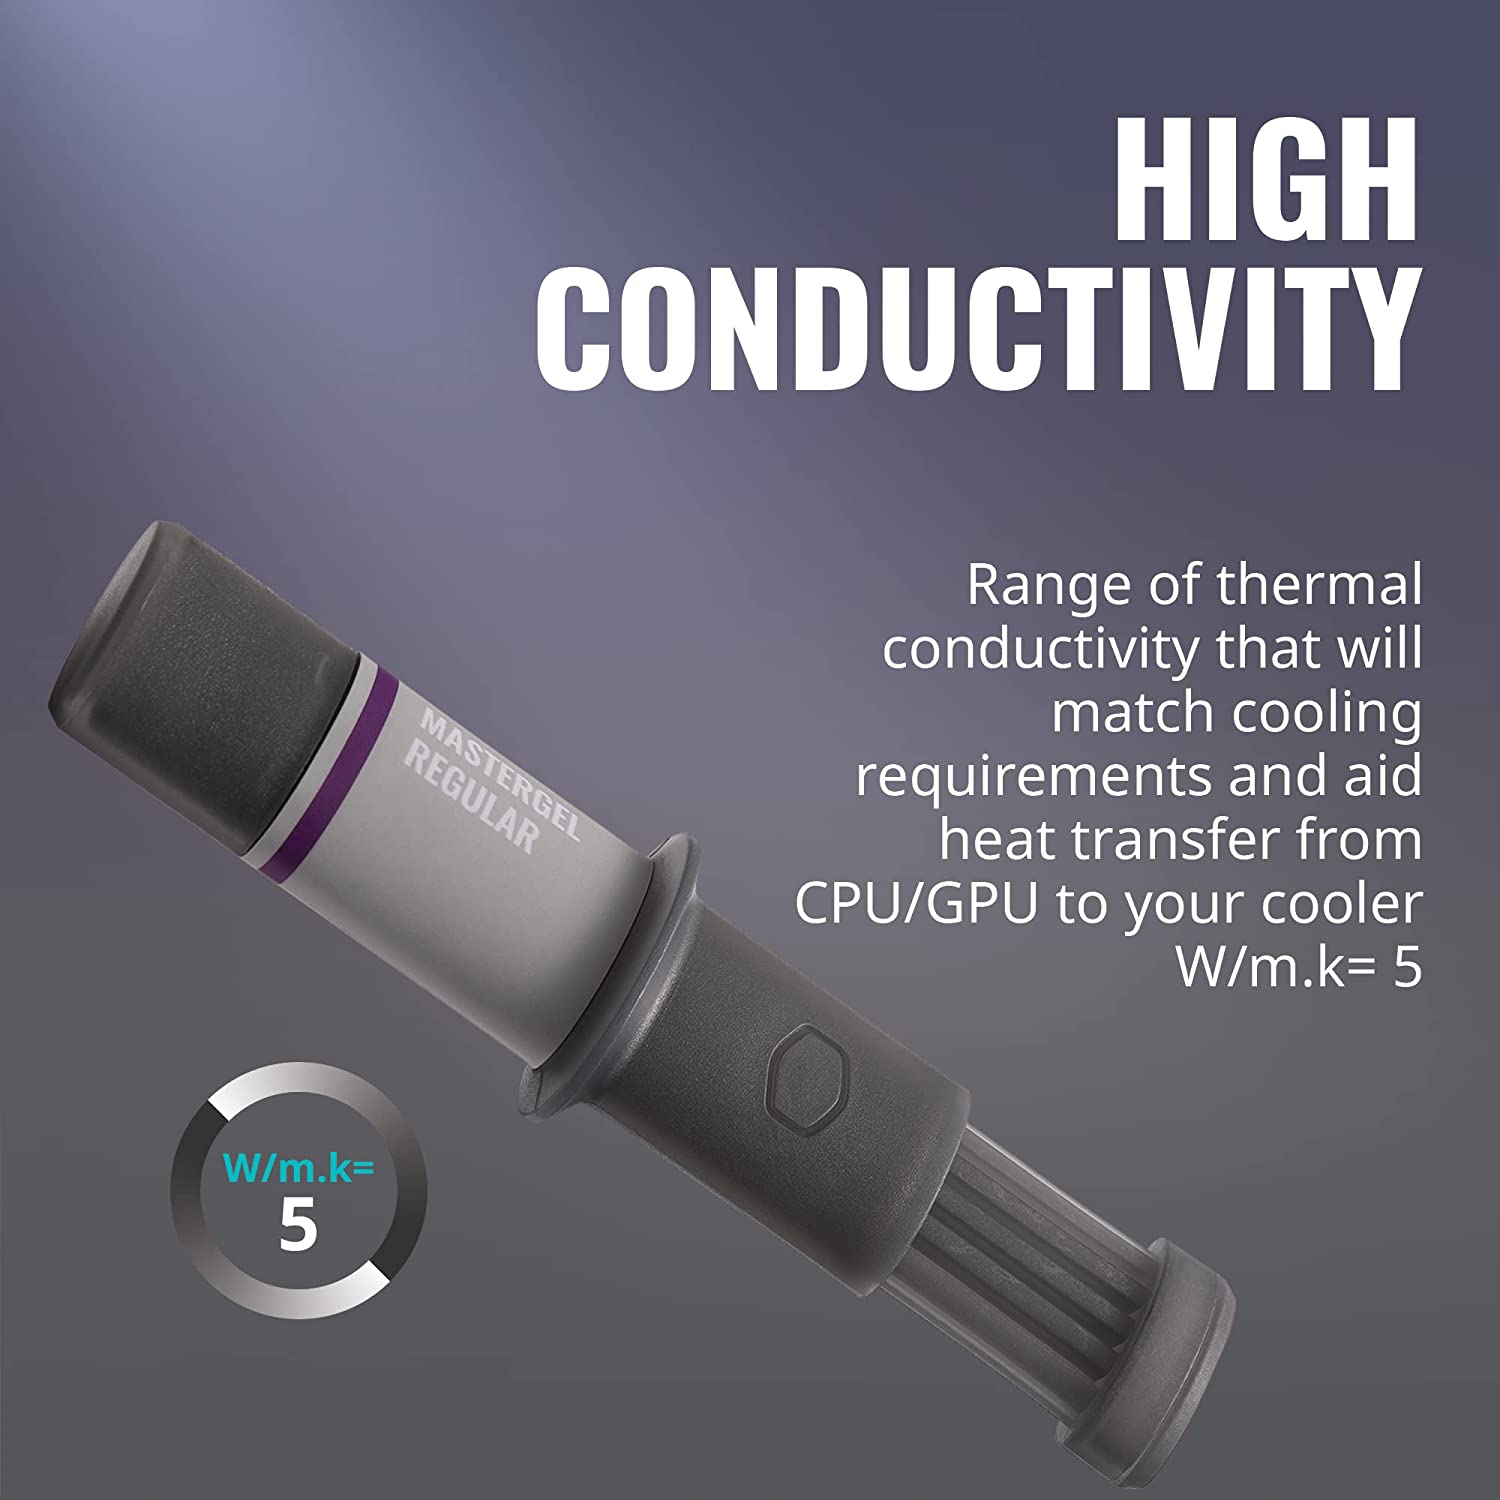 معجون توصيل الحرارة MASTERGEL REGULAR من شركة Cooler Master ومسحة تنظيف بكمية 4 جرام